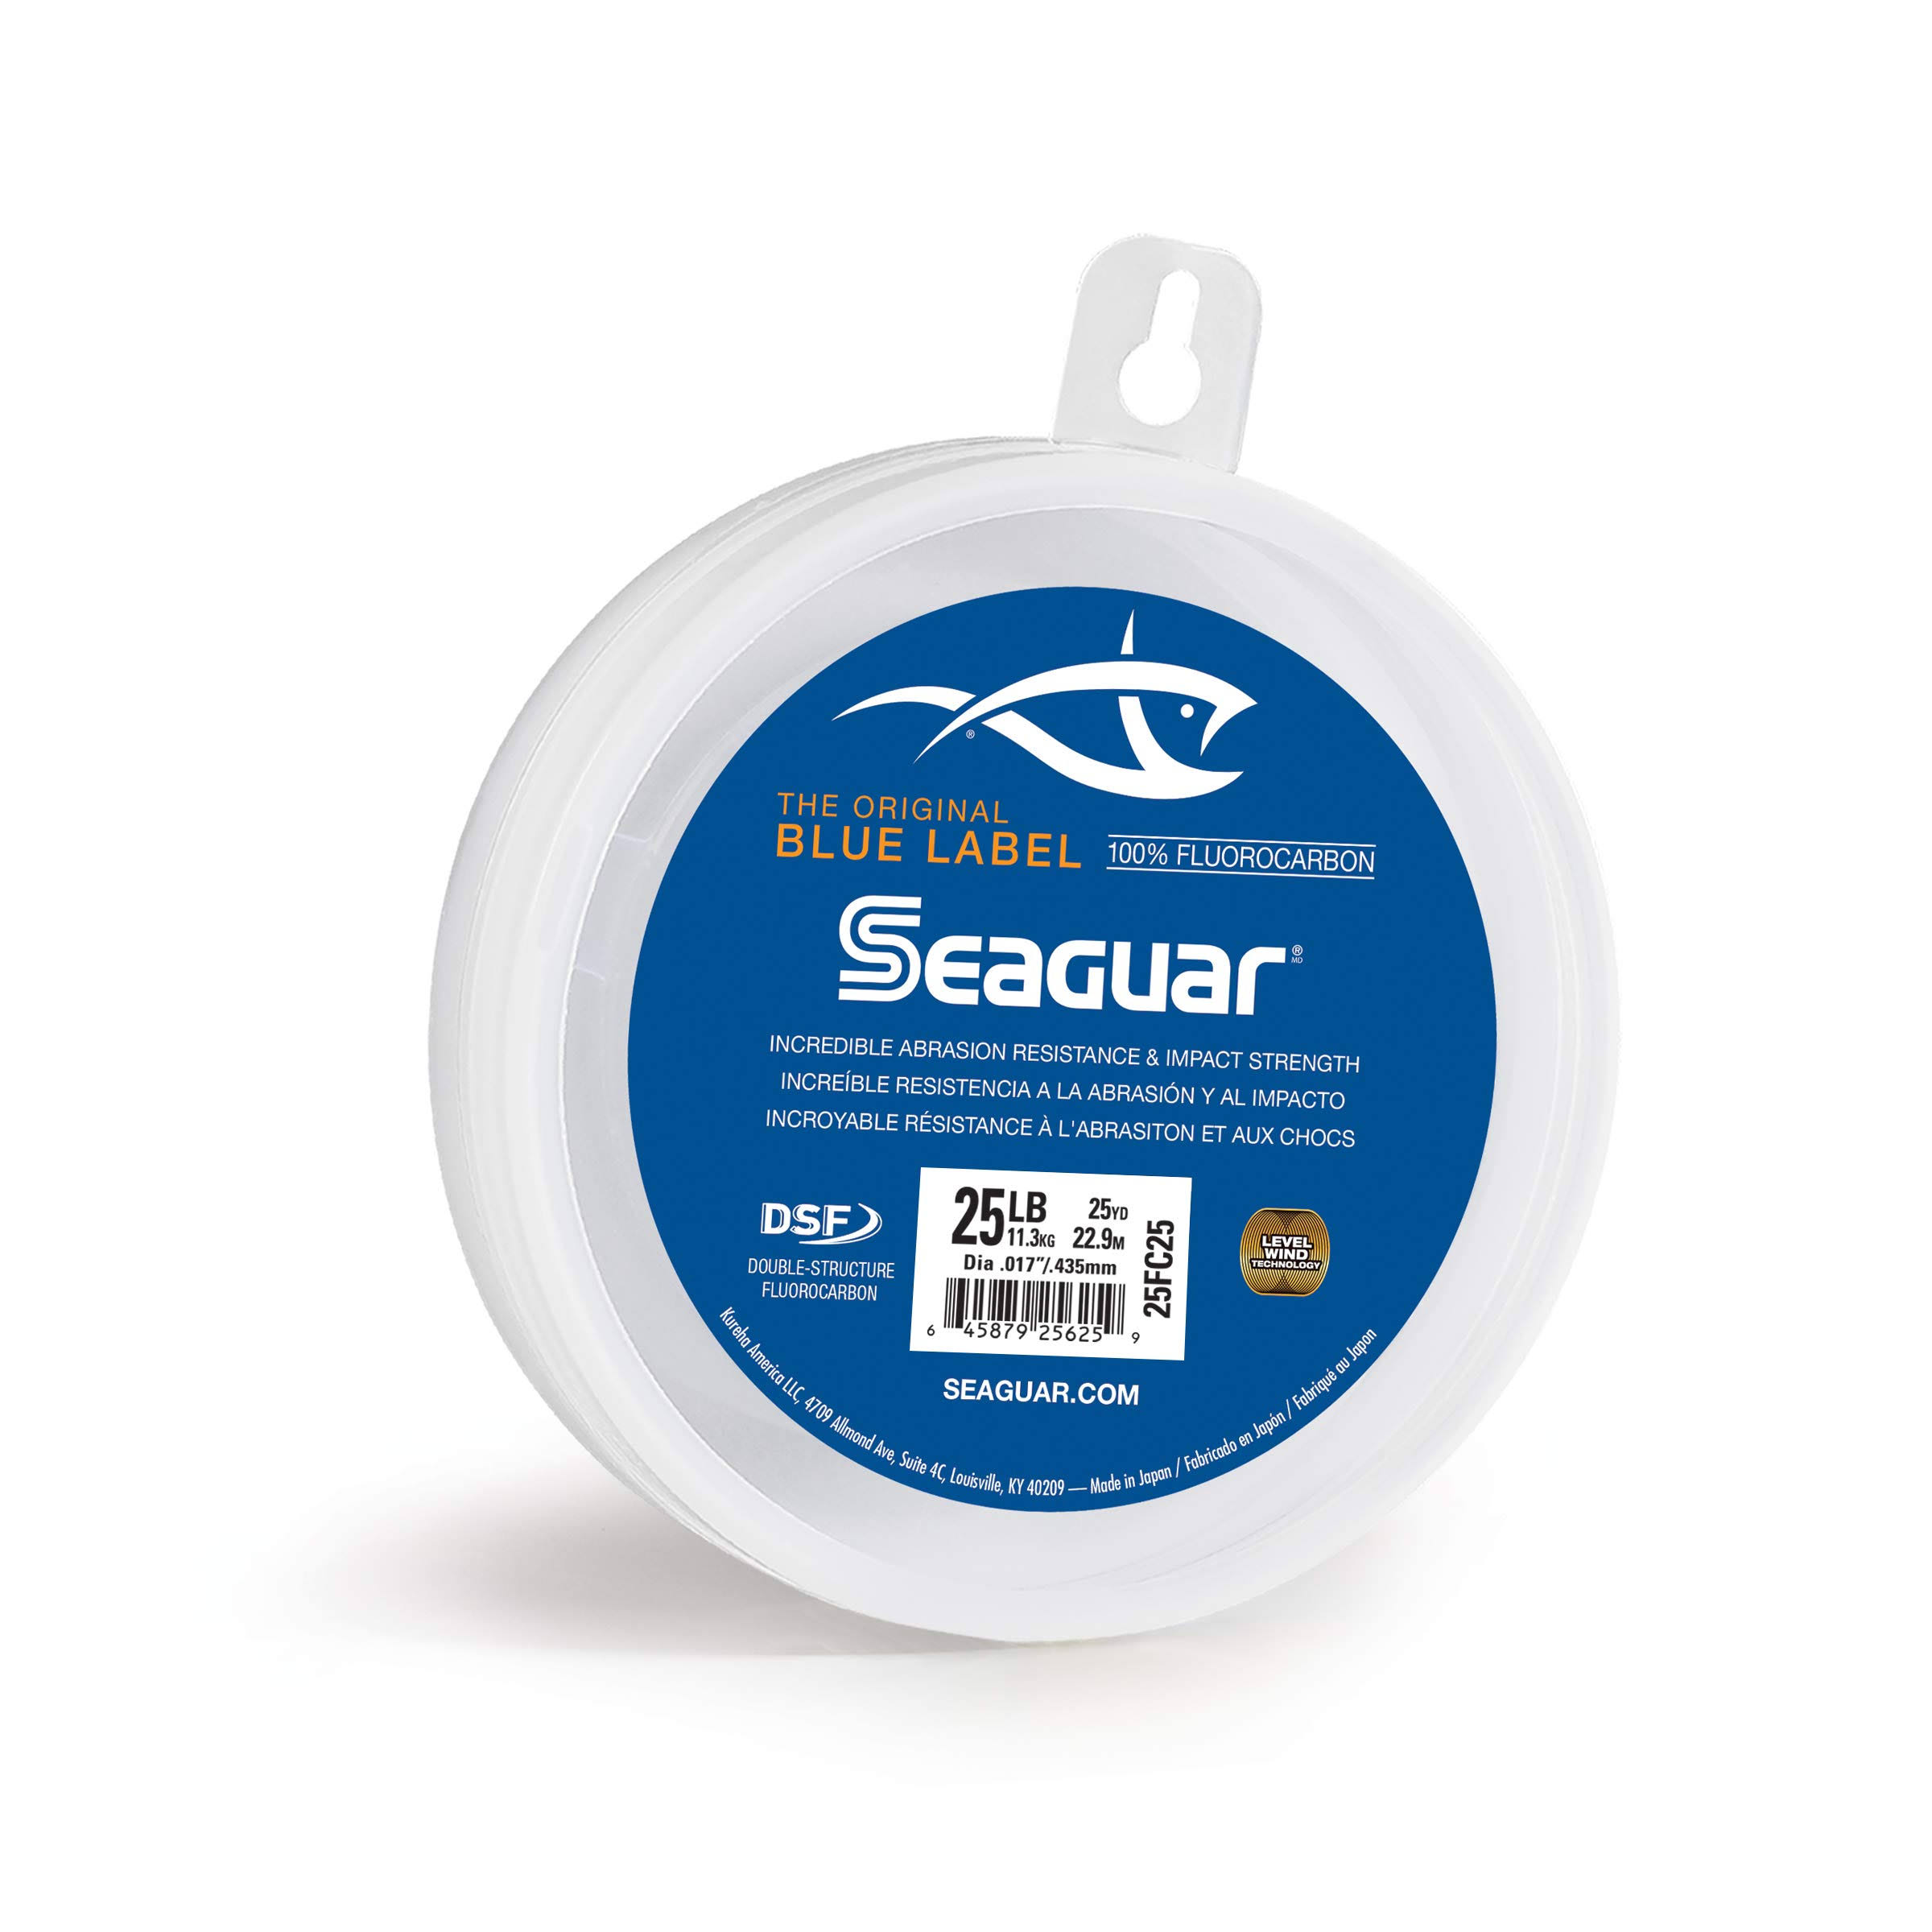 Seaguar Blue Label Fluorocarbon Fishing Line